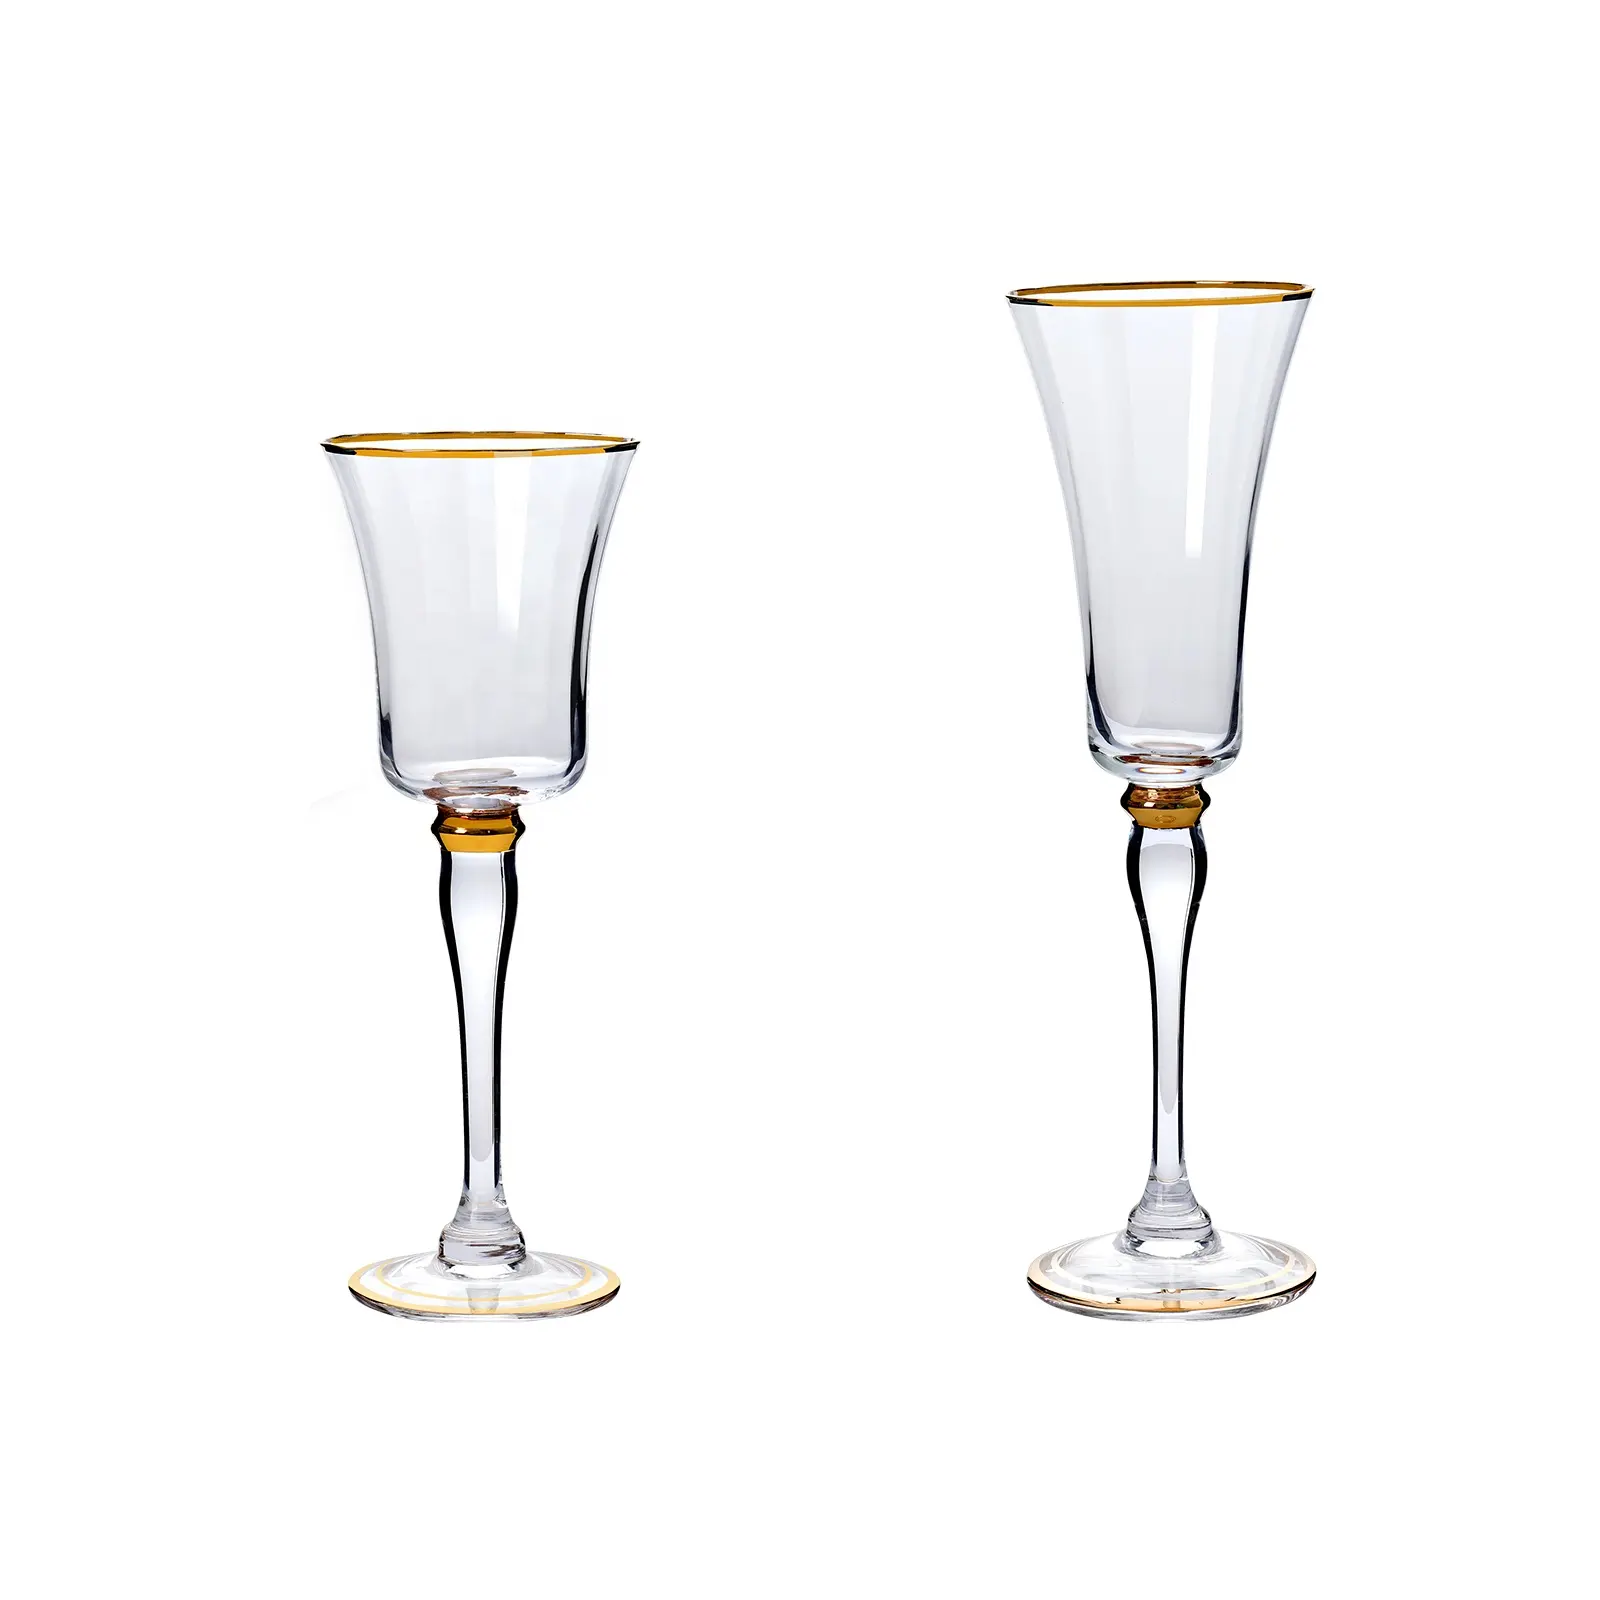 Moda di lusso classico chiaro con due bordi dorati alta tazza di bicchieri di Champagne Set di bicchieri di vino personalizzato bicchiere calice